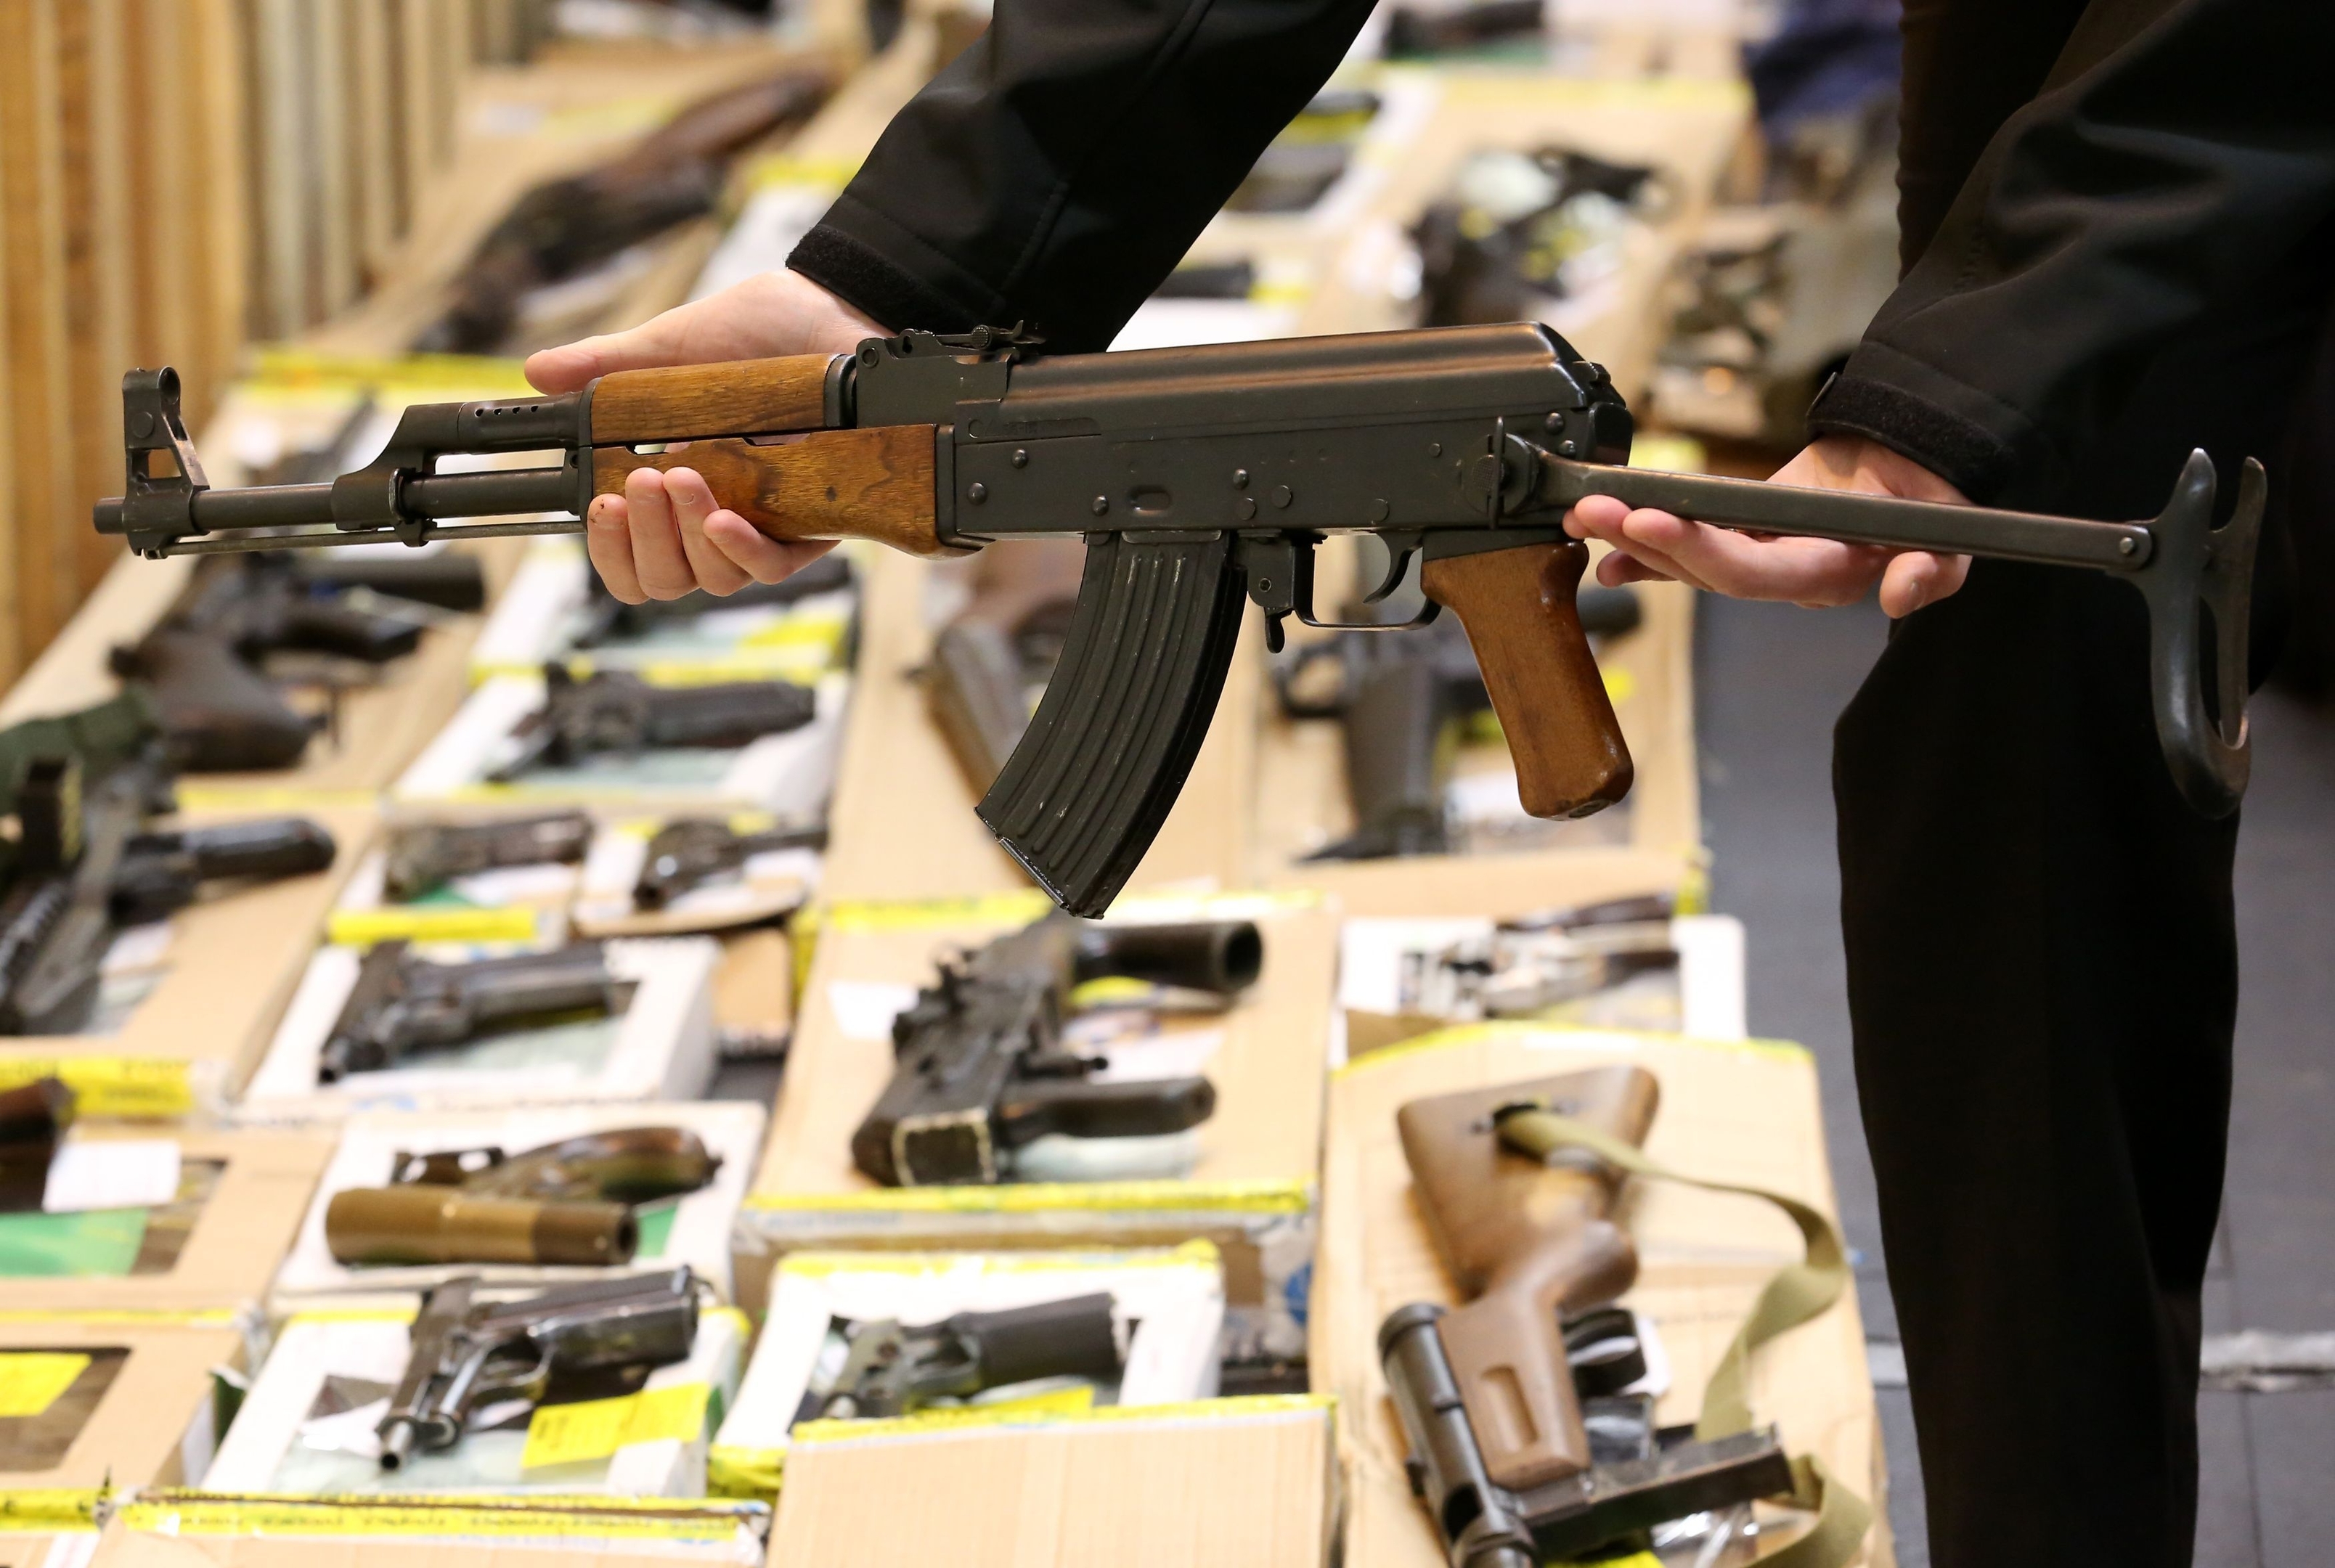 Largest UK firearms haul